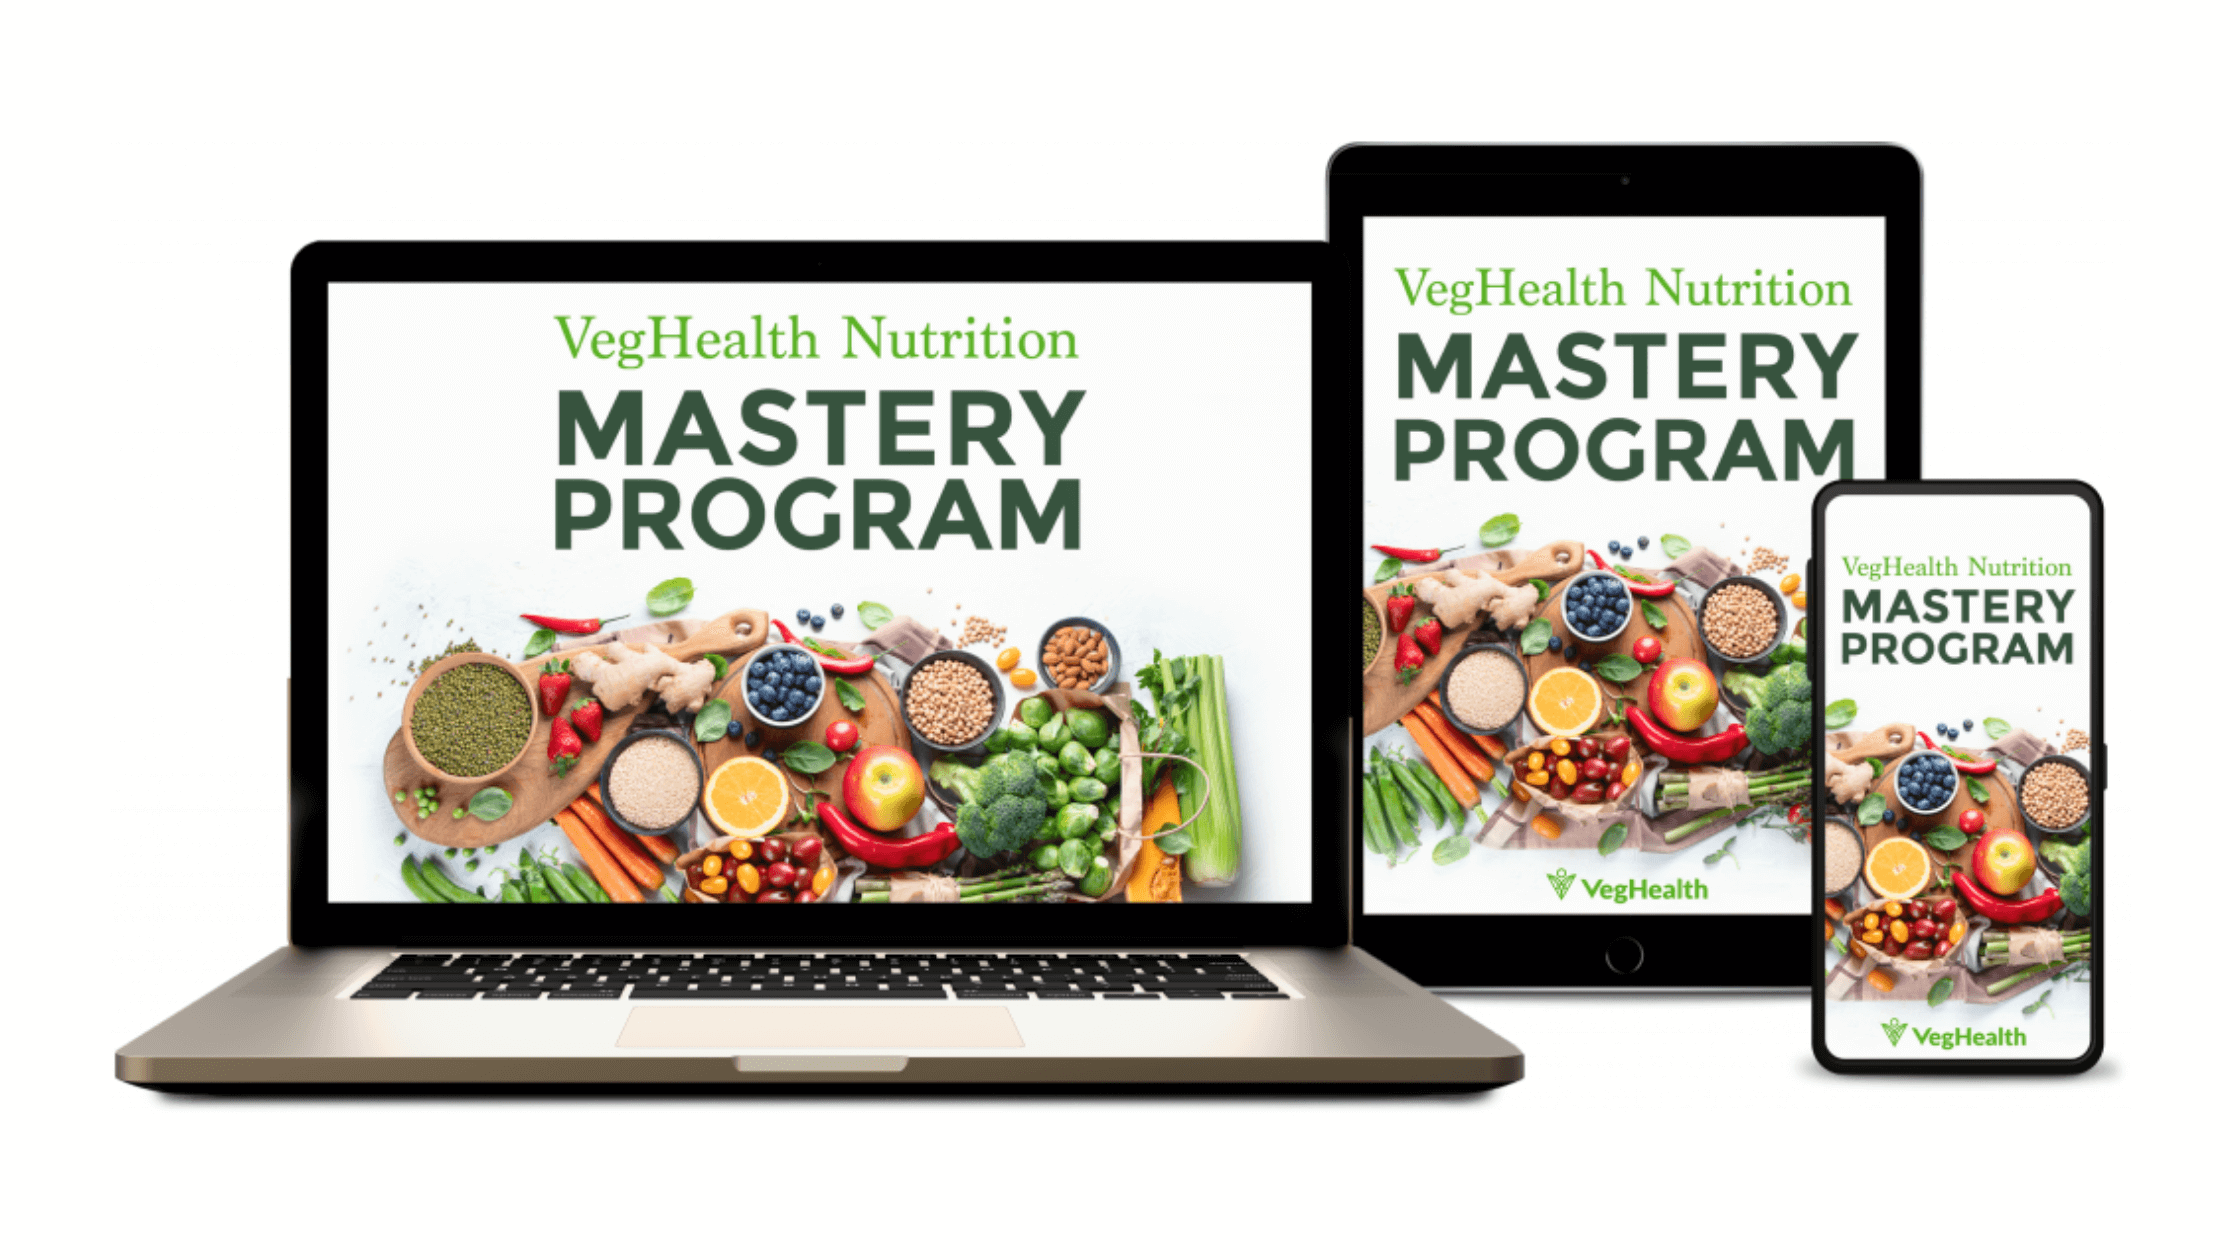 VegHealth Nutrition Mastery Program Reviews